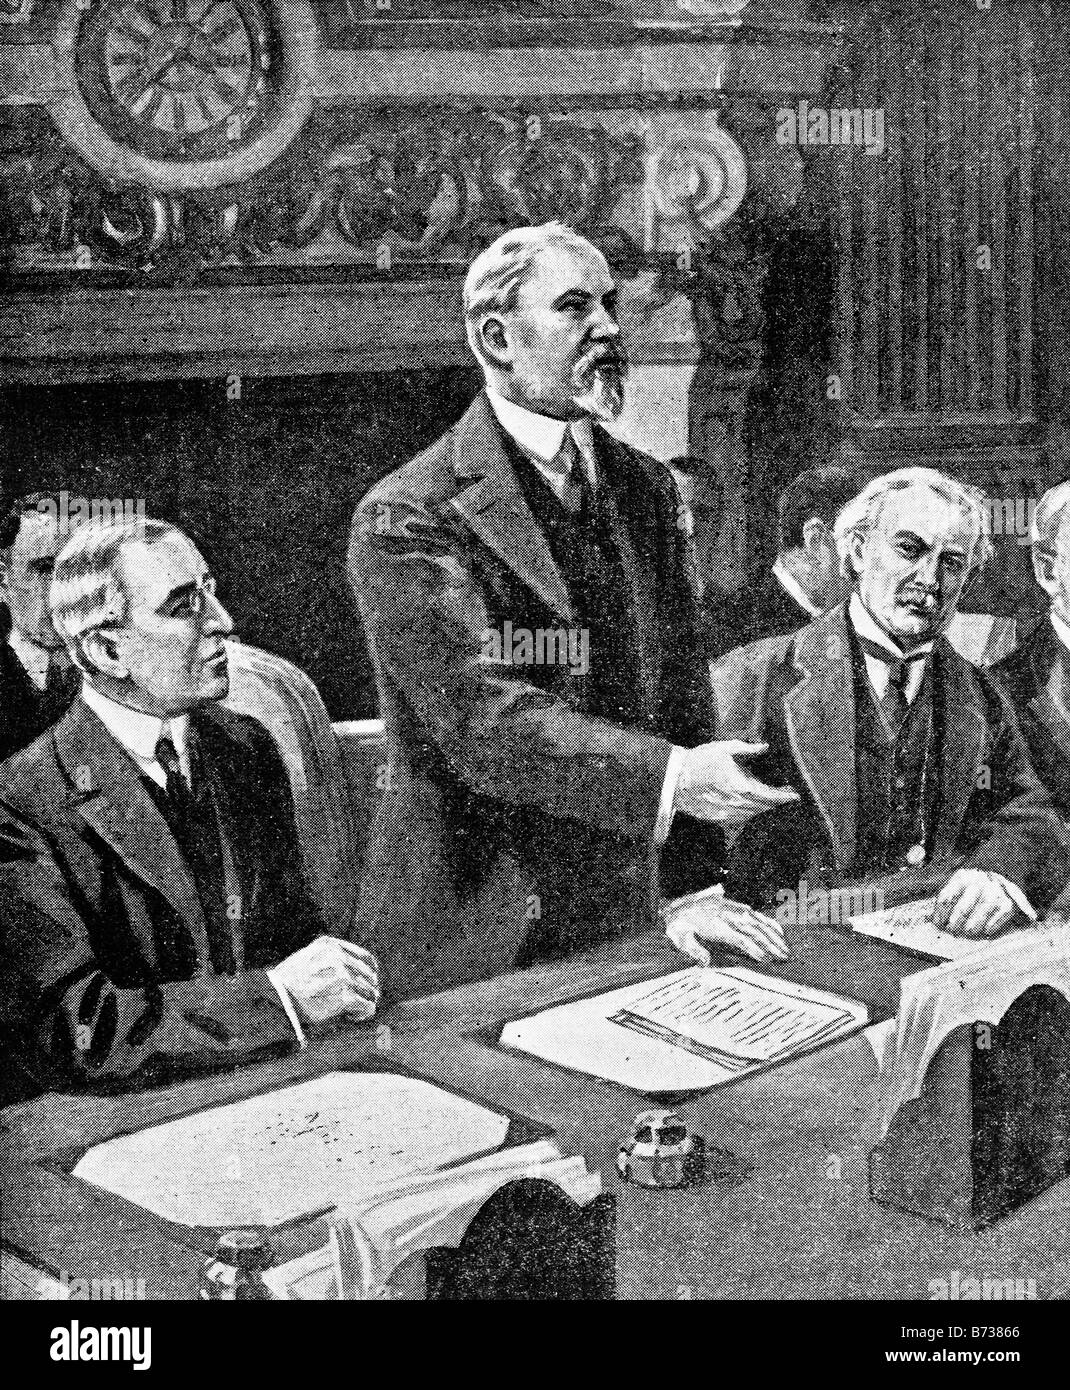 Ersten Weltkrieg zeitgenössische Illustration der Alliierten Führer bei der feierlichen Eröffnung der Friedenskonferenz von Paris im Januar 1919. Stockfoto